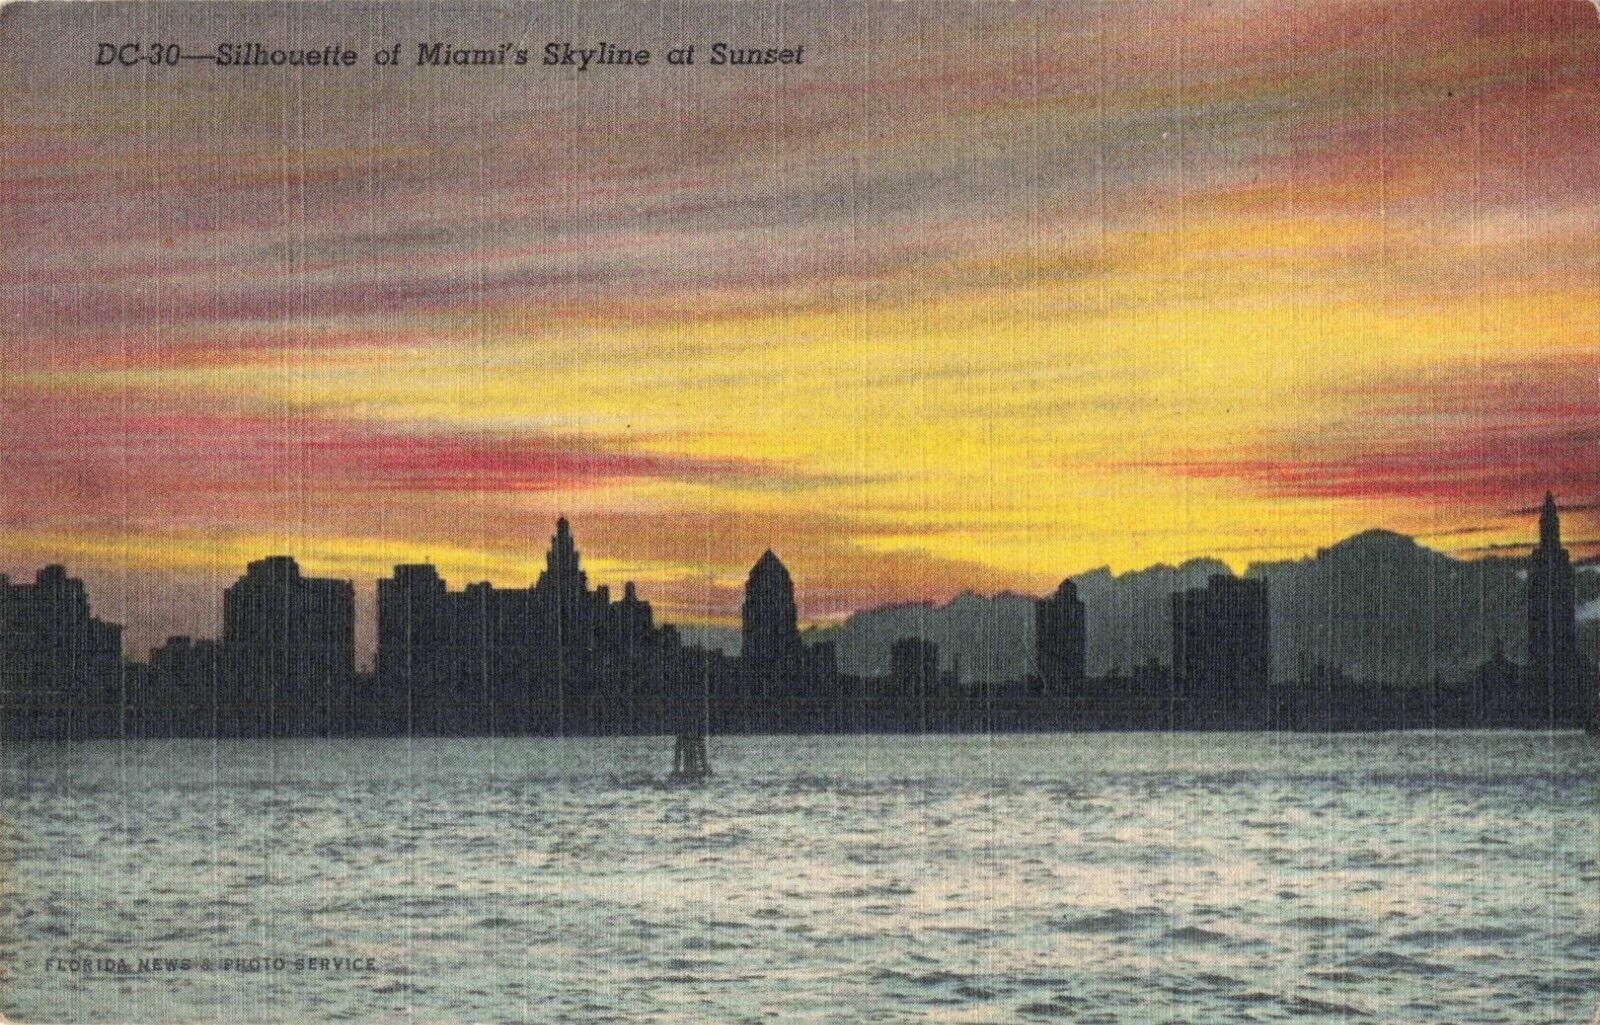 Miami FL Florida, Miami Skyline Silhouette at Sunset, Vintage Postcard